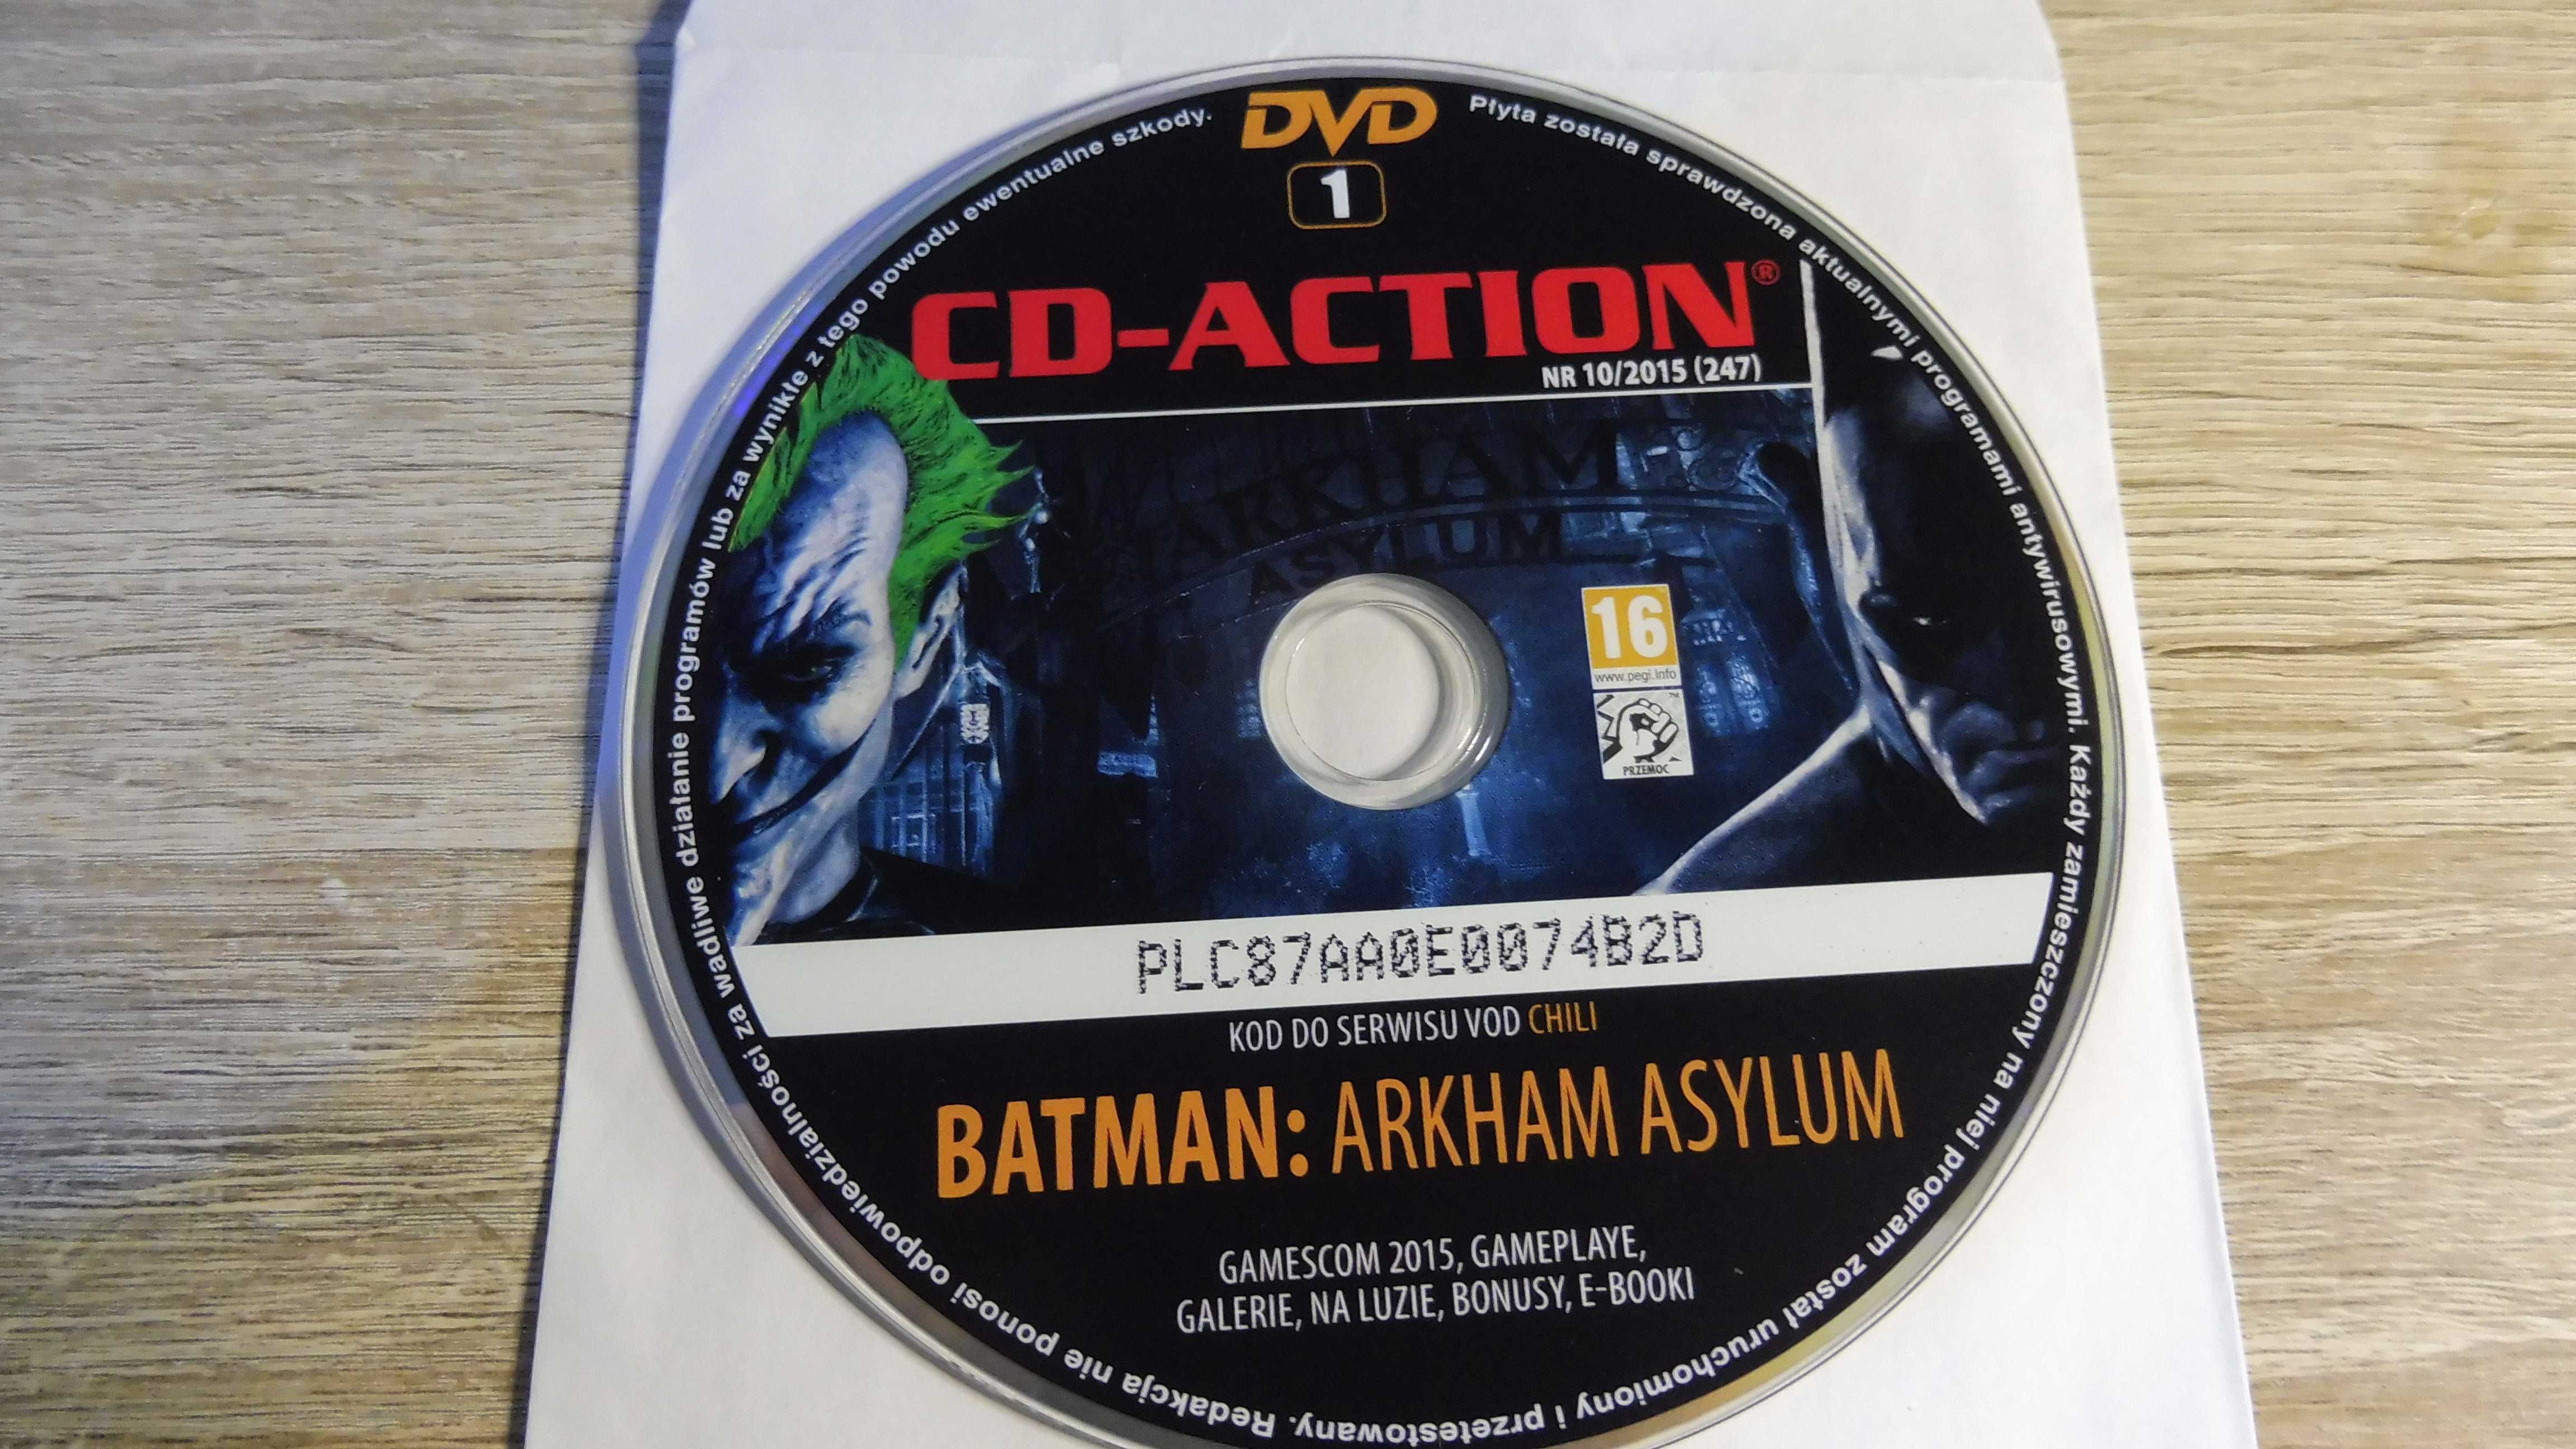 CD Action 10/2015 (247) - Batman: Arkham Asylum